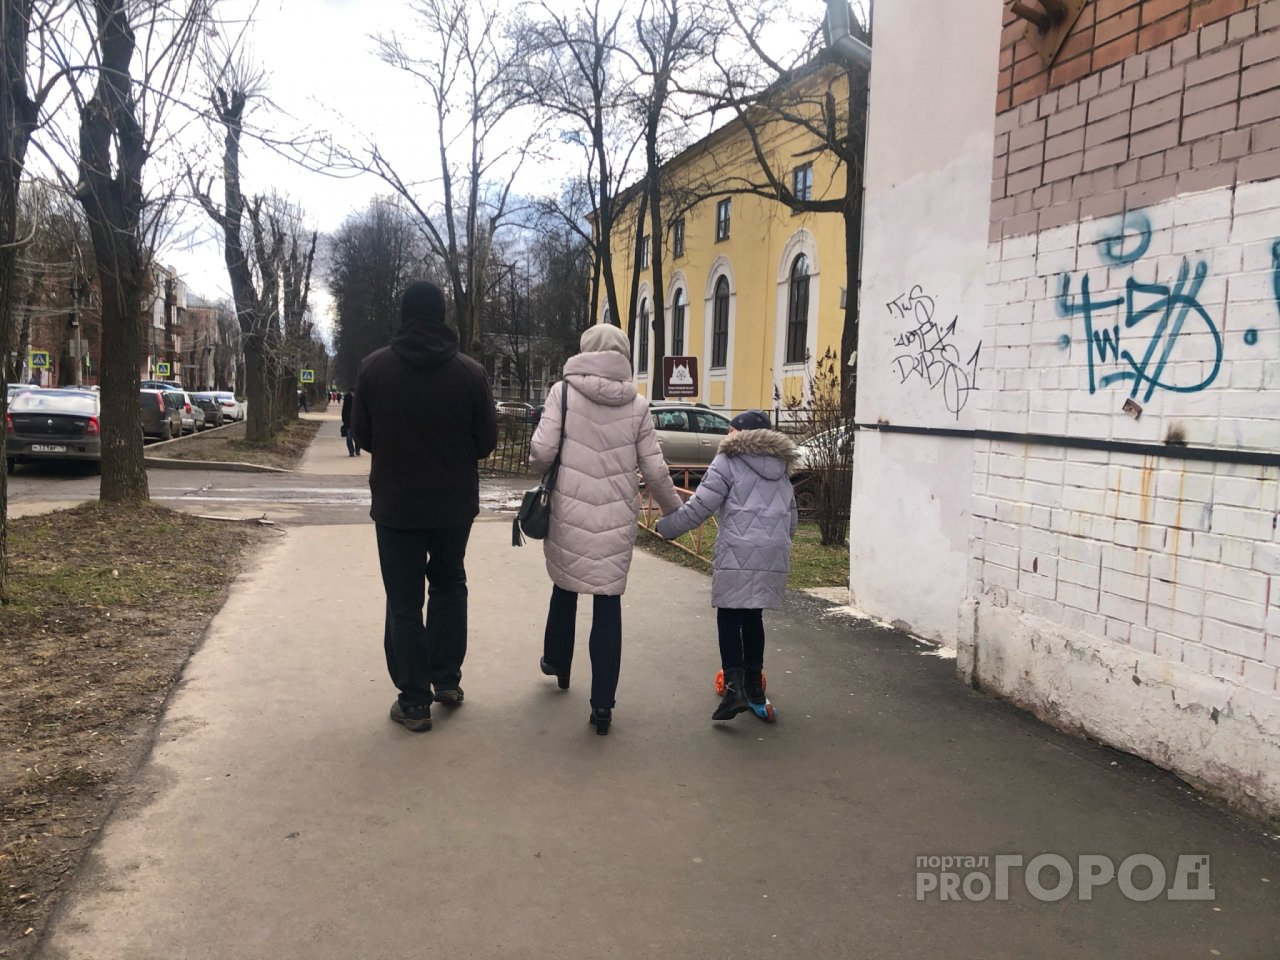 10 тысяч за каждого ребенка: Путин пообещал выплату всем семьям России